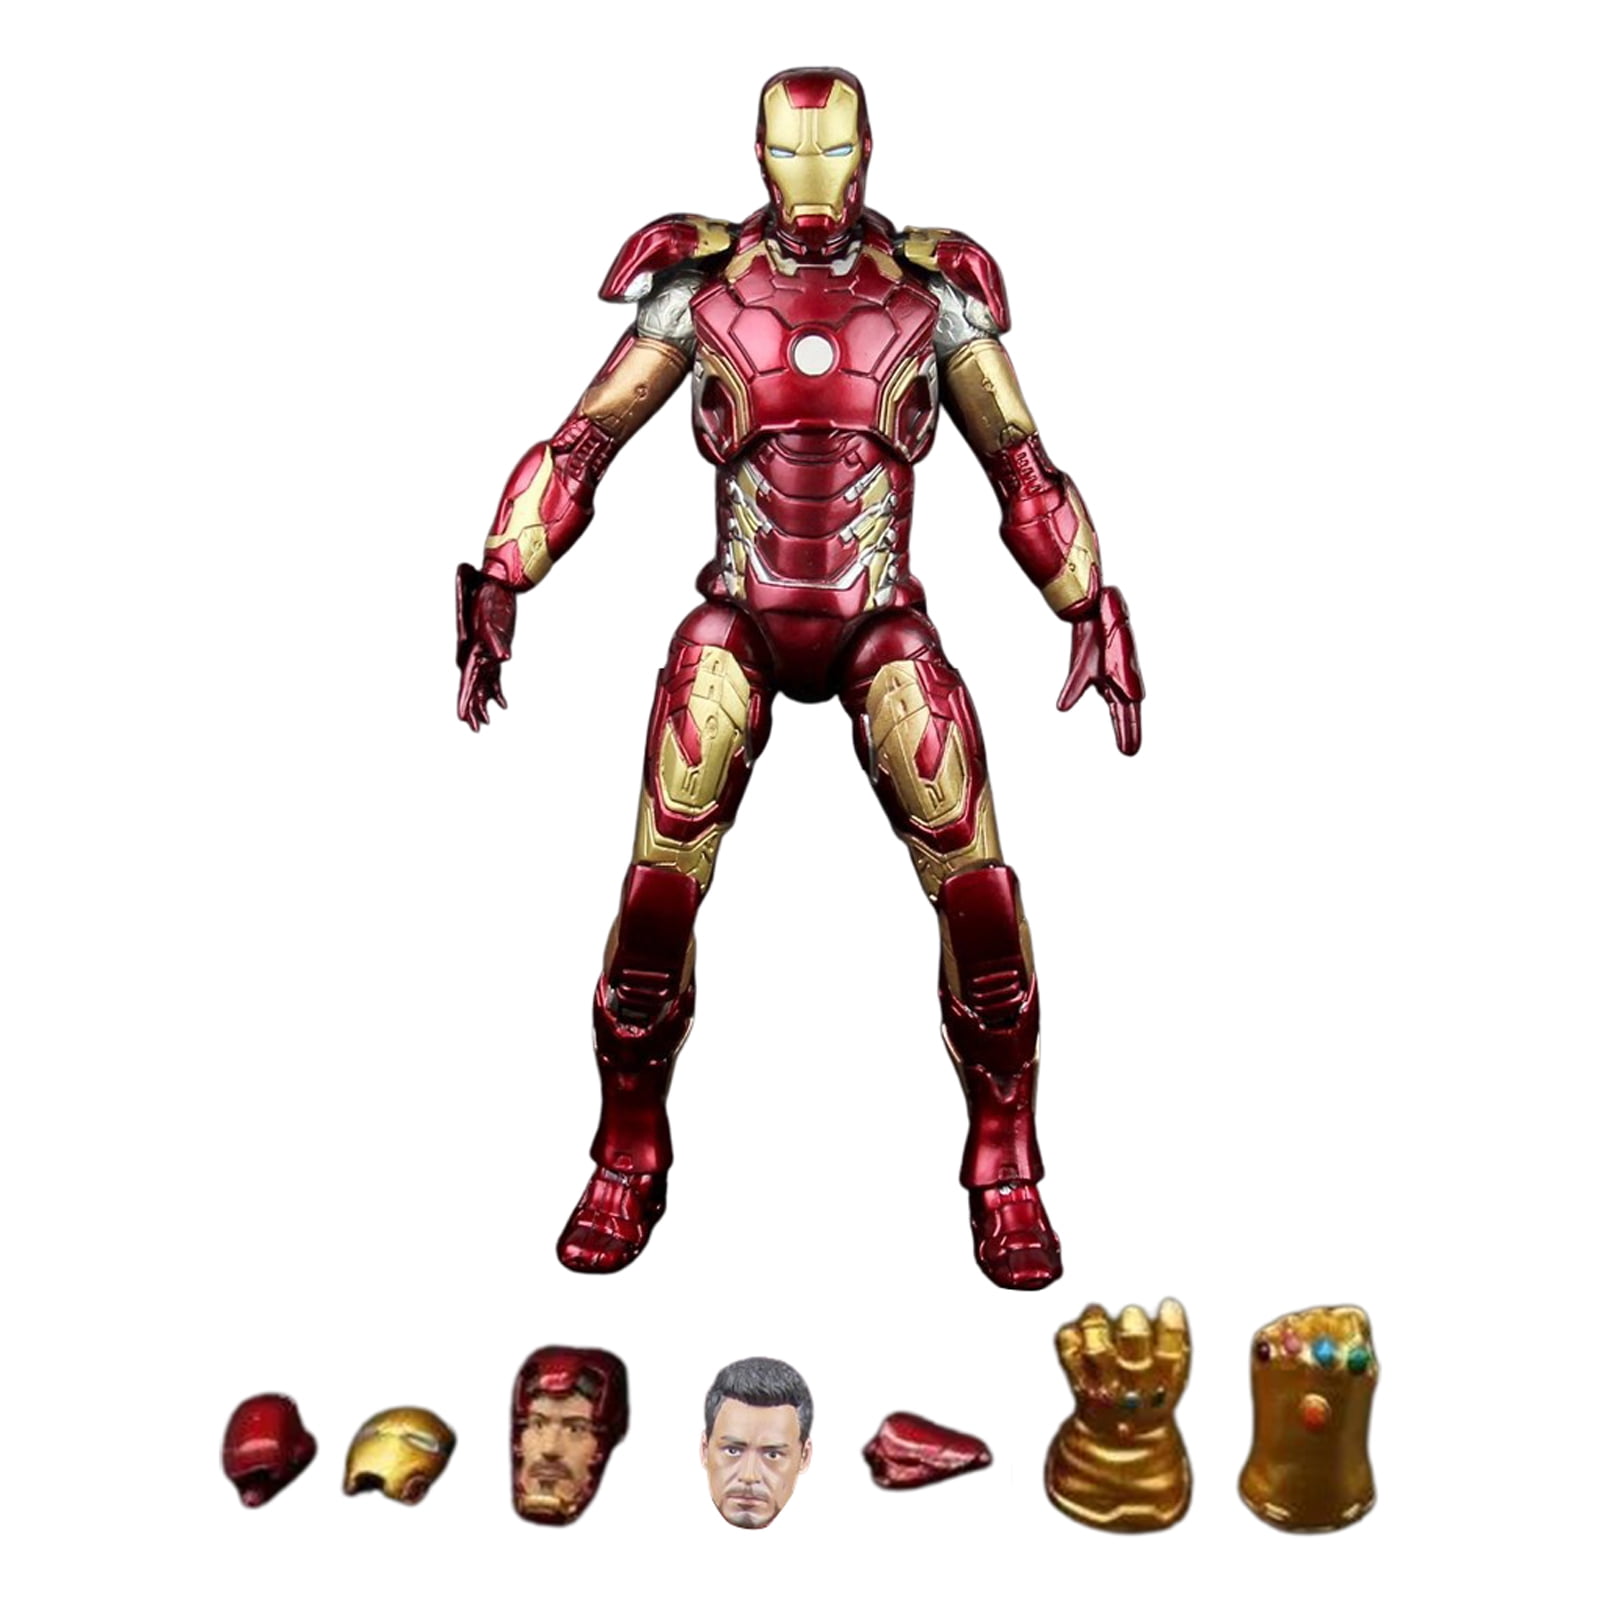 Playskool Heros Dual Packs Captain America Spiderman Groot Iron Man and more 